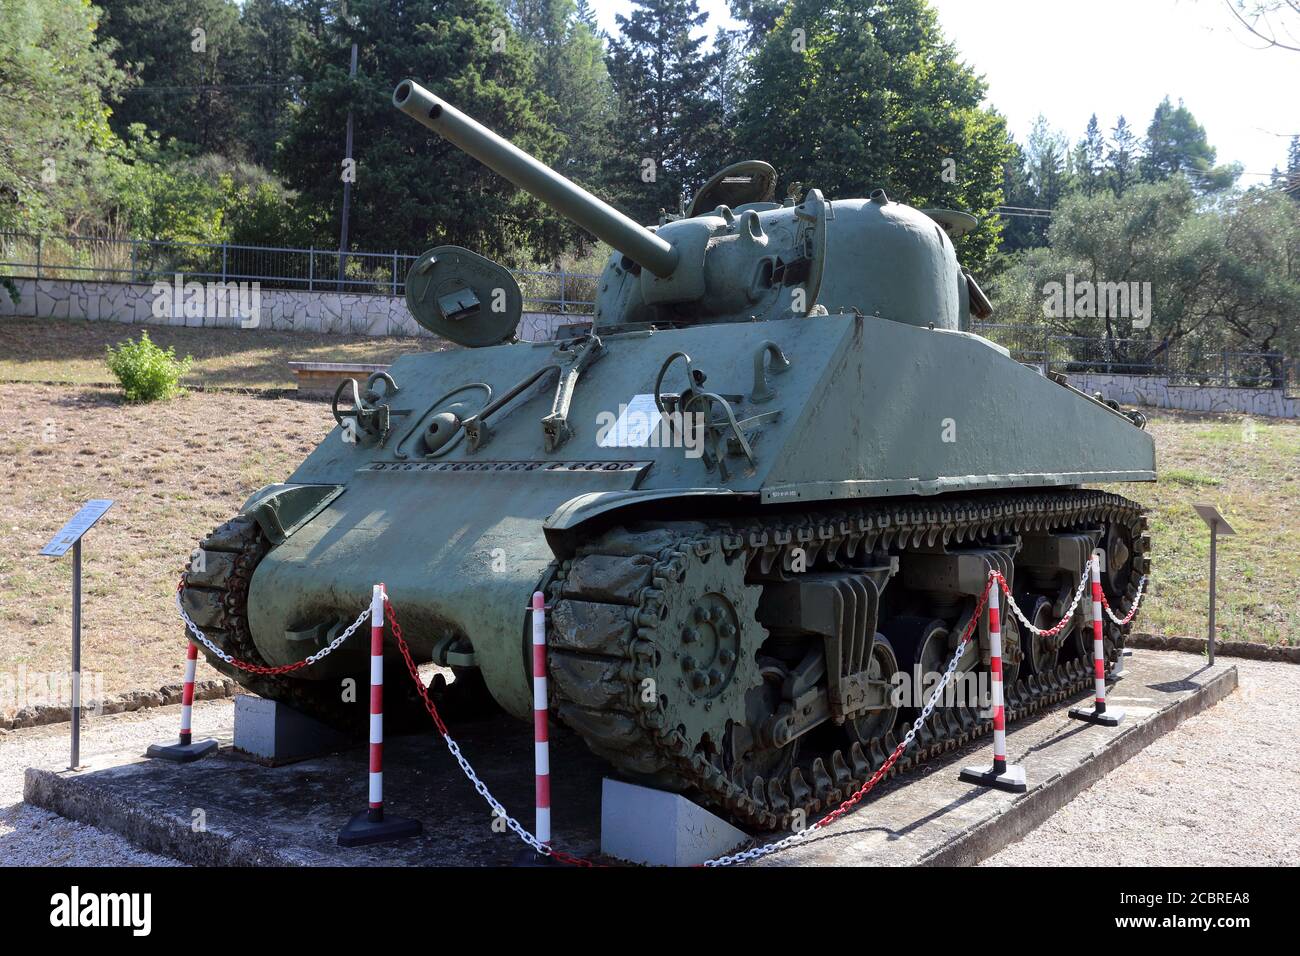 Mignano Montelungo, Italien - 14. August 2020: Der mittlere Panzer M4 Sherman wurde im Museumsbereich des Wallfahrtsortes Montelungo ausgestellt Stockfoto